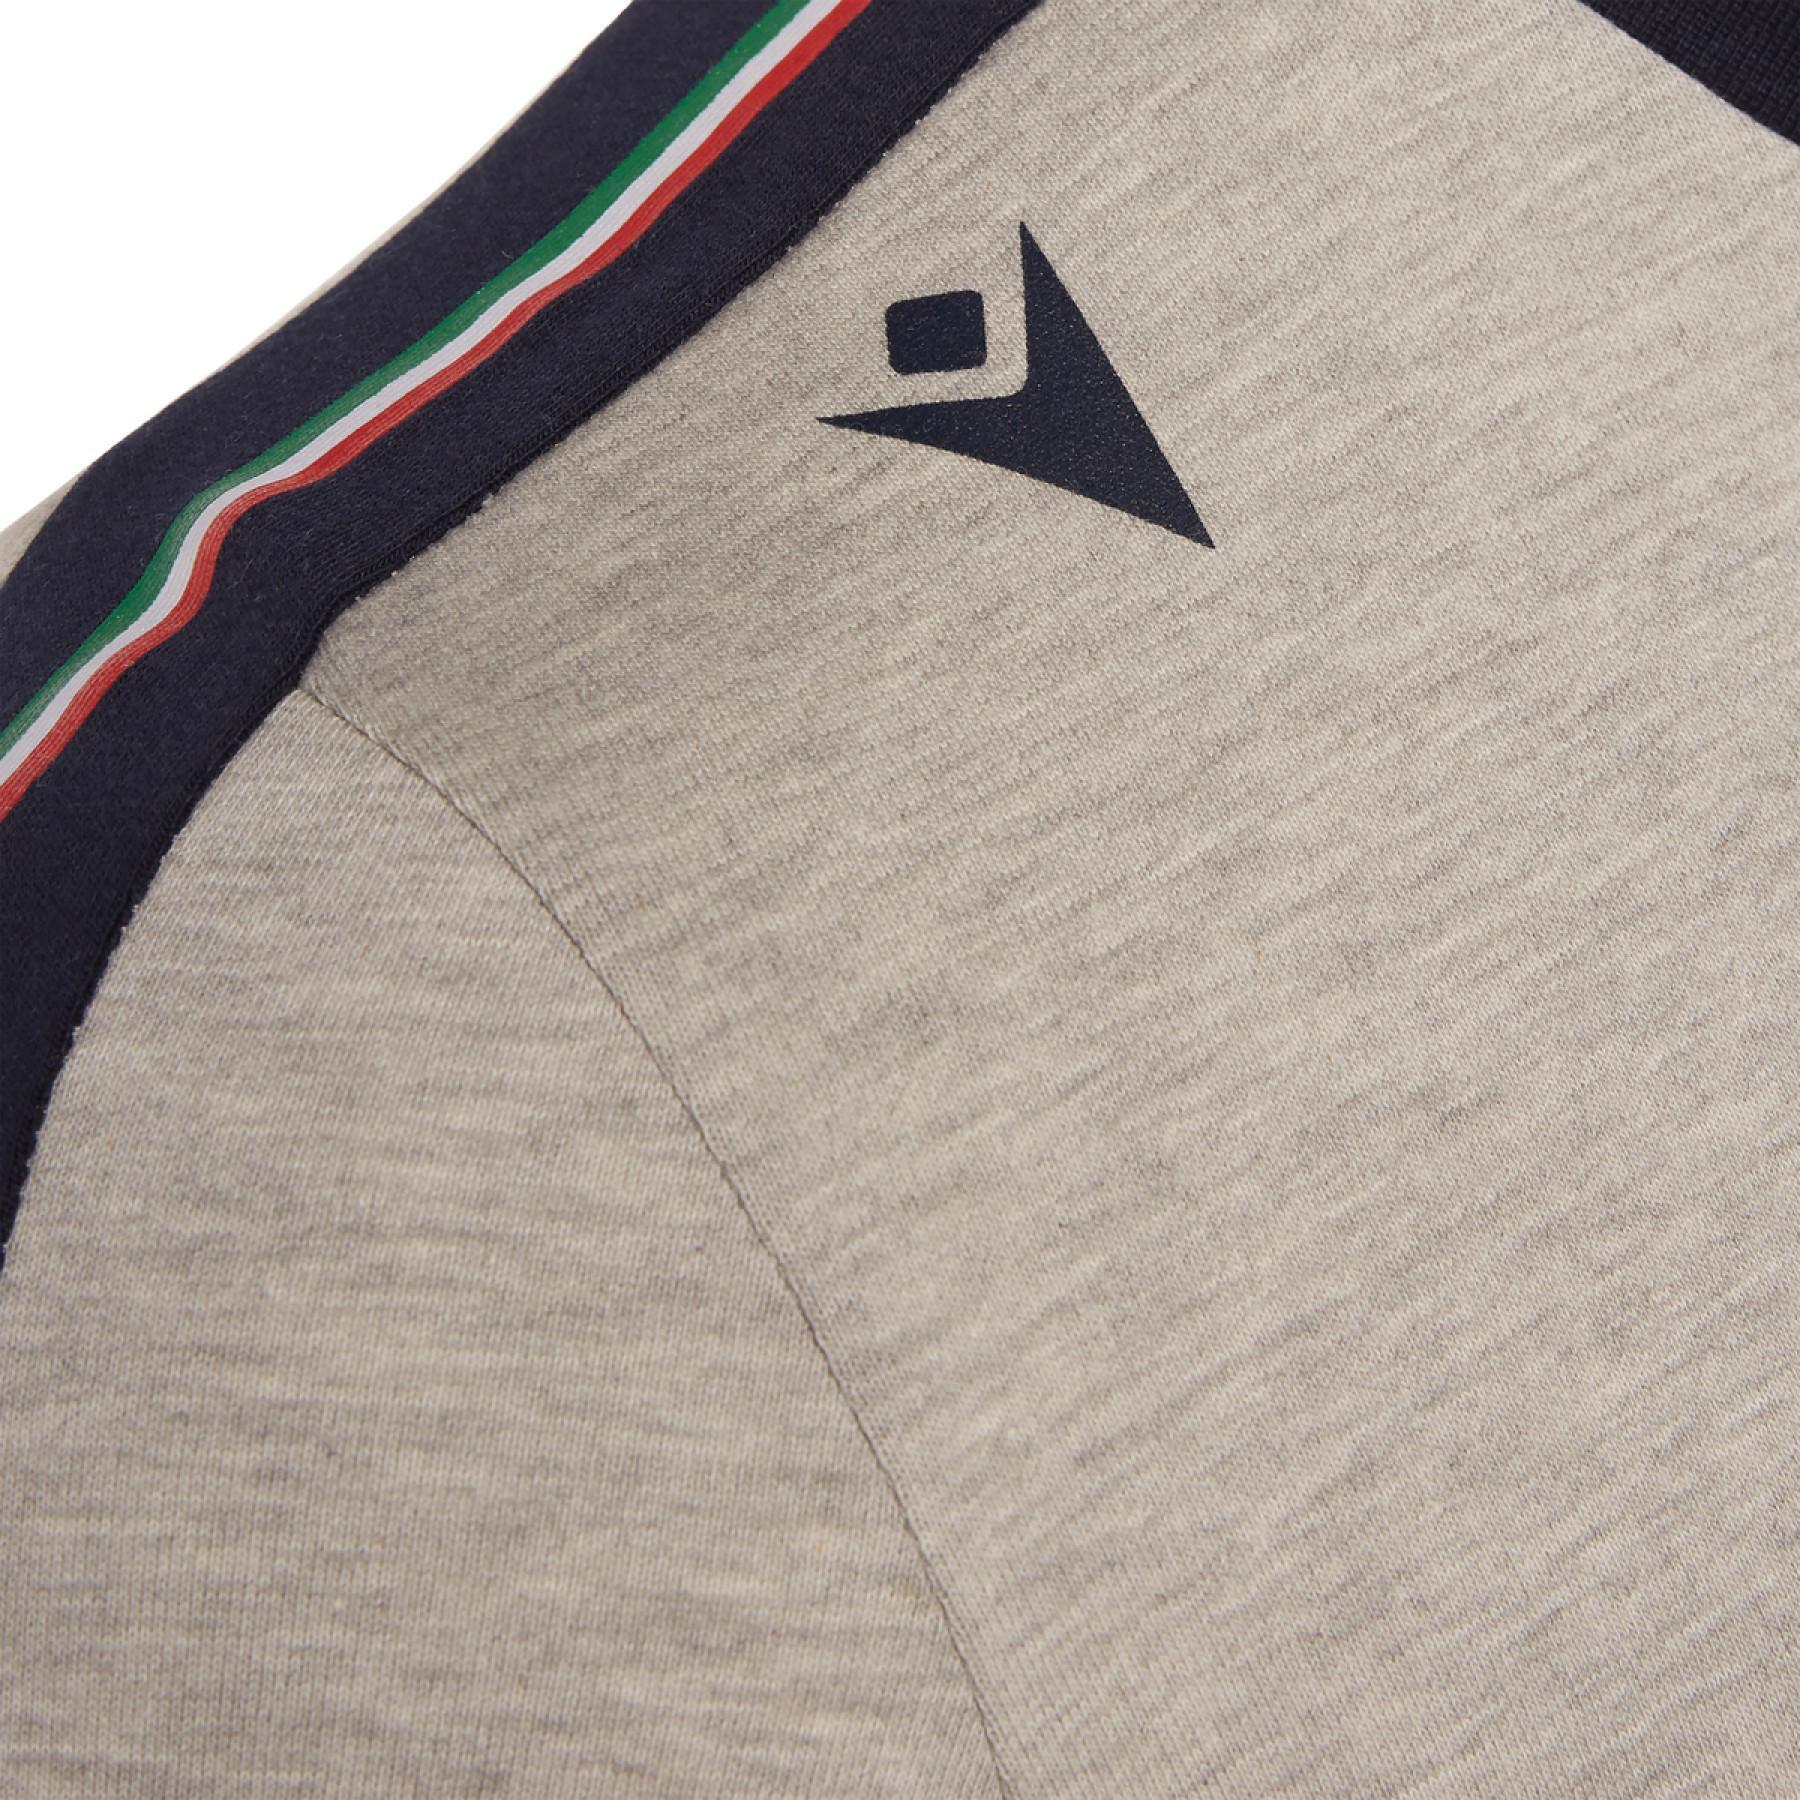 T-shirt algodão Italie rubgy 2019